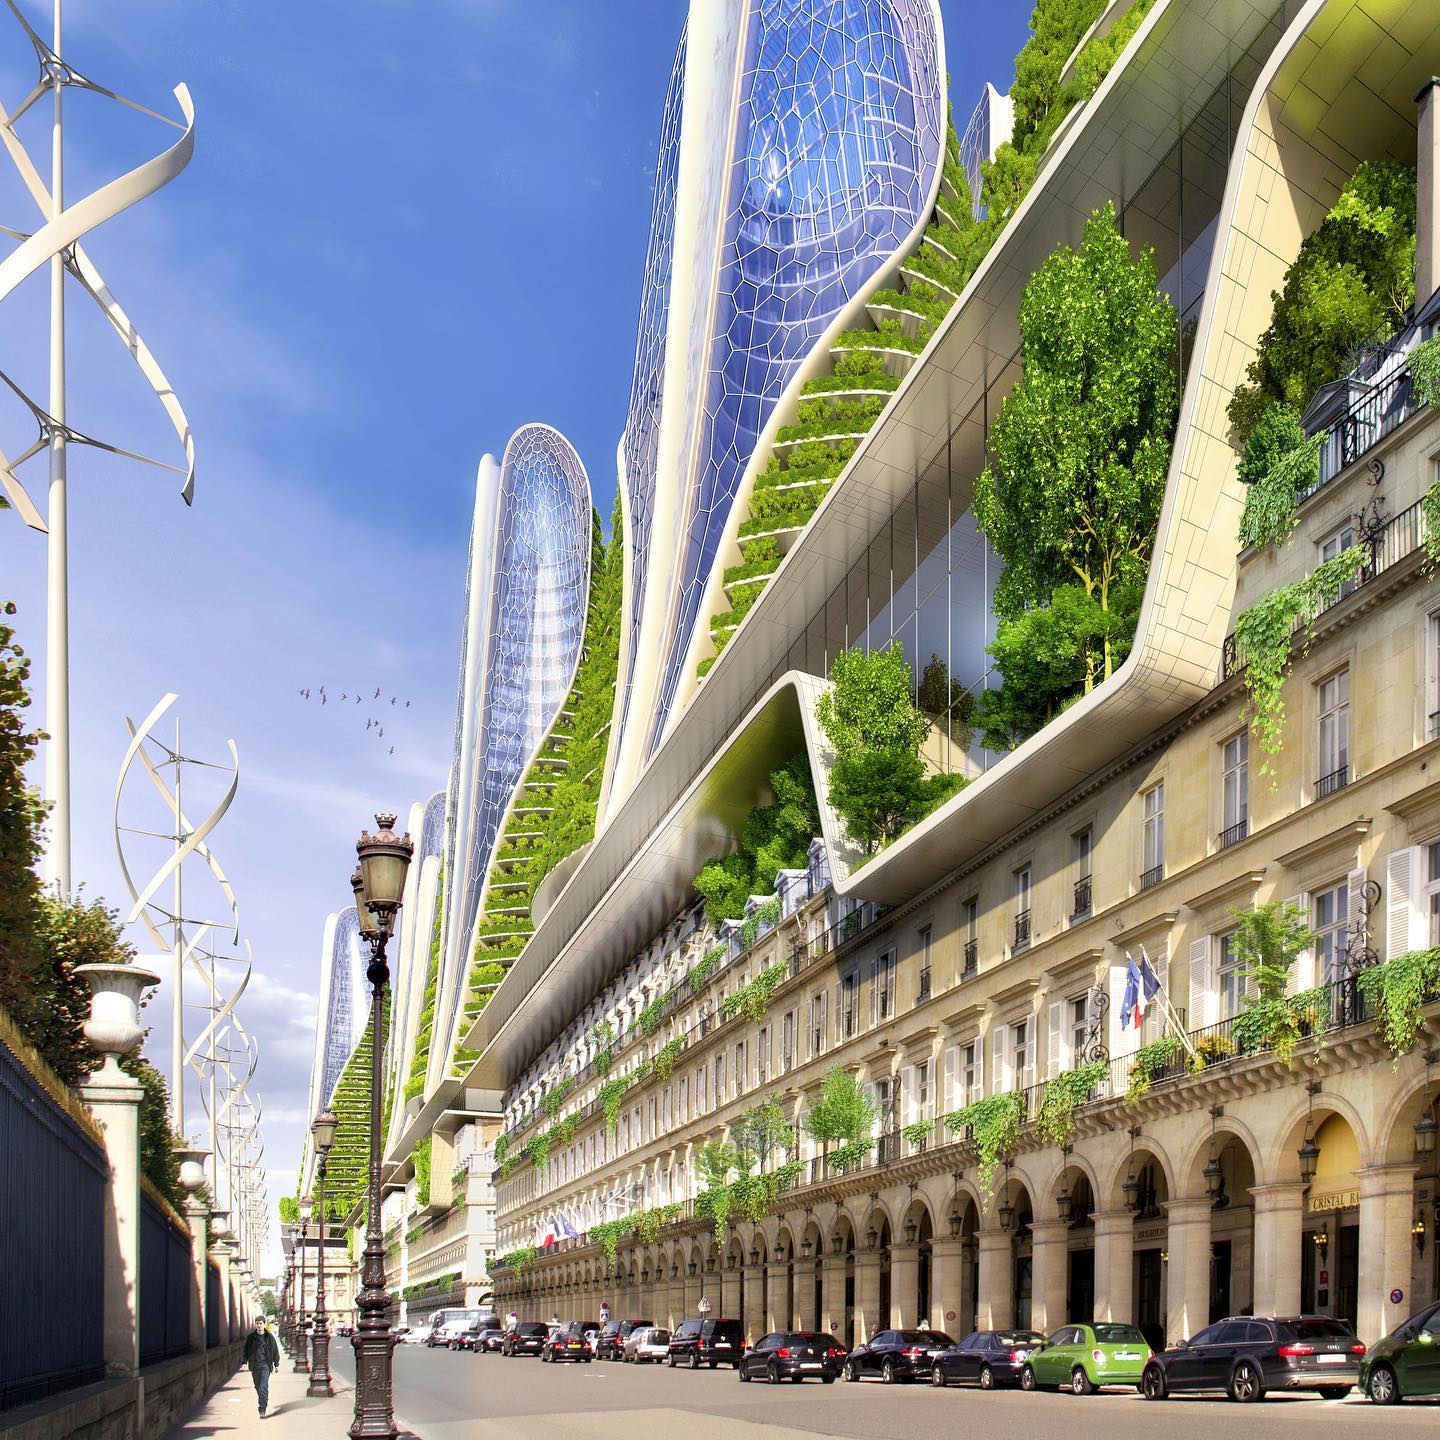 Paris 2050 Smart City Project Sustainable Architecture - on Thursd